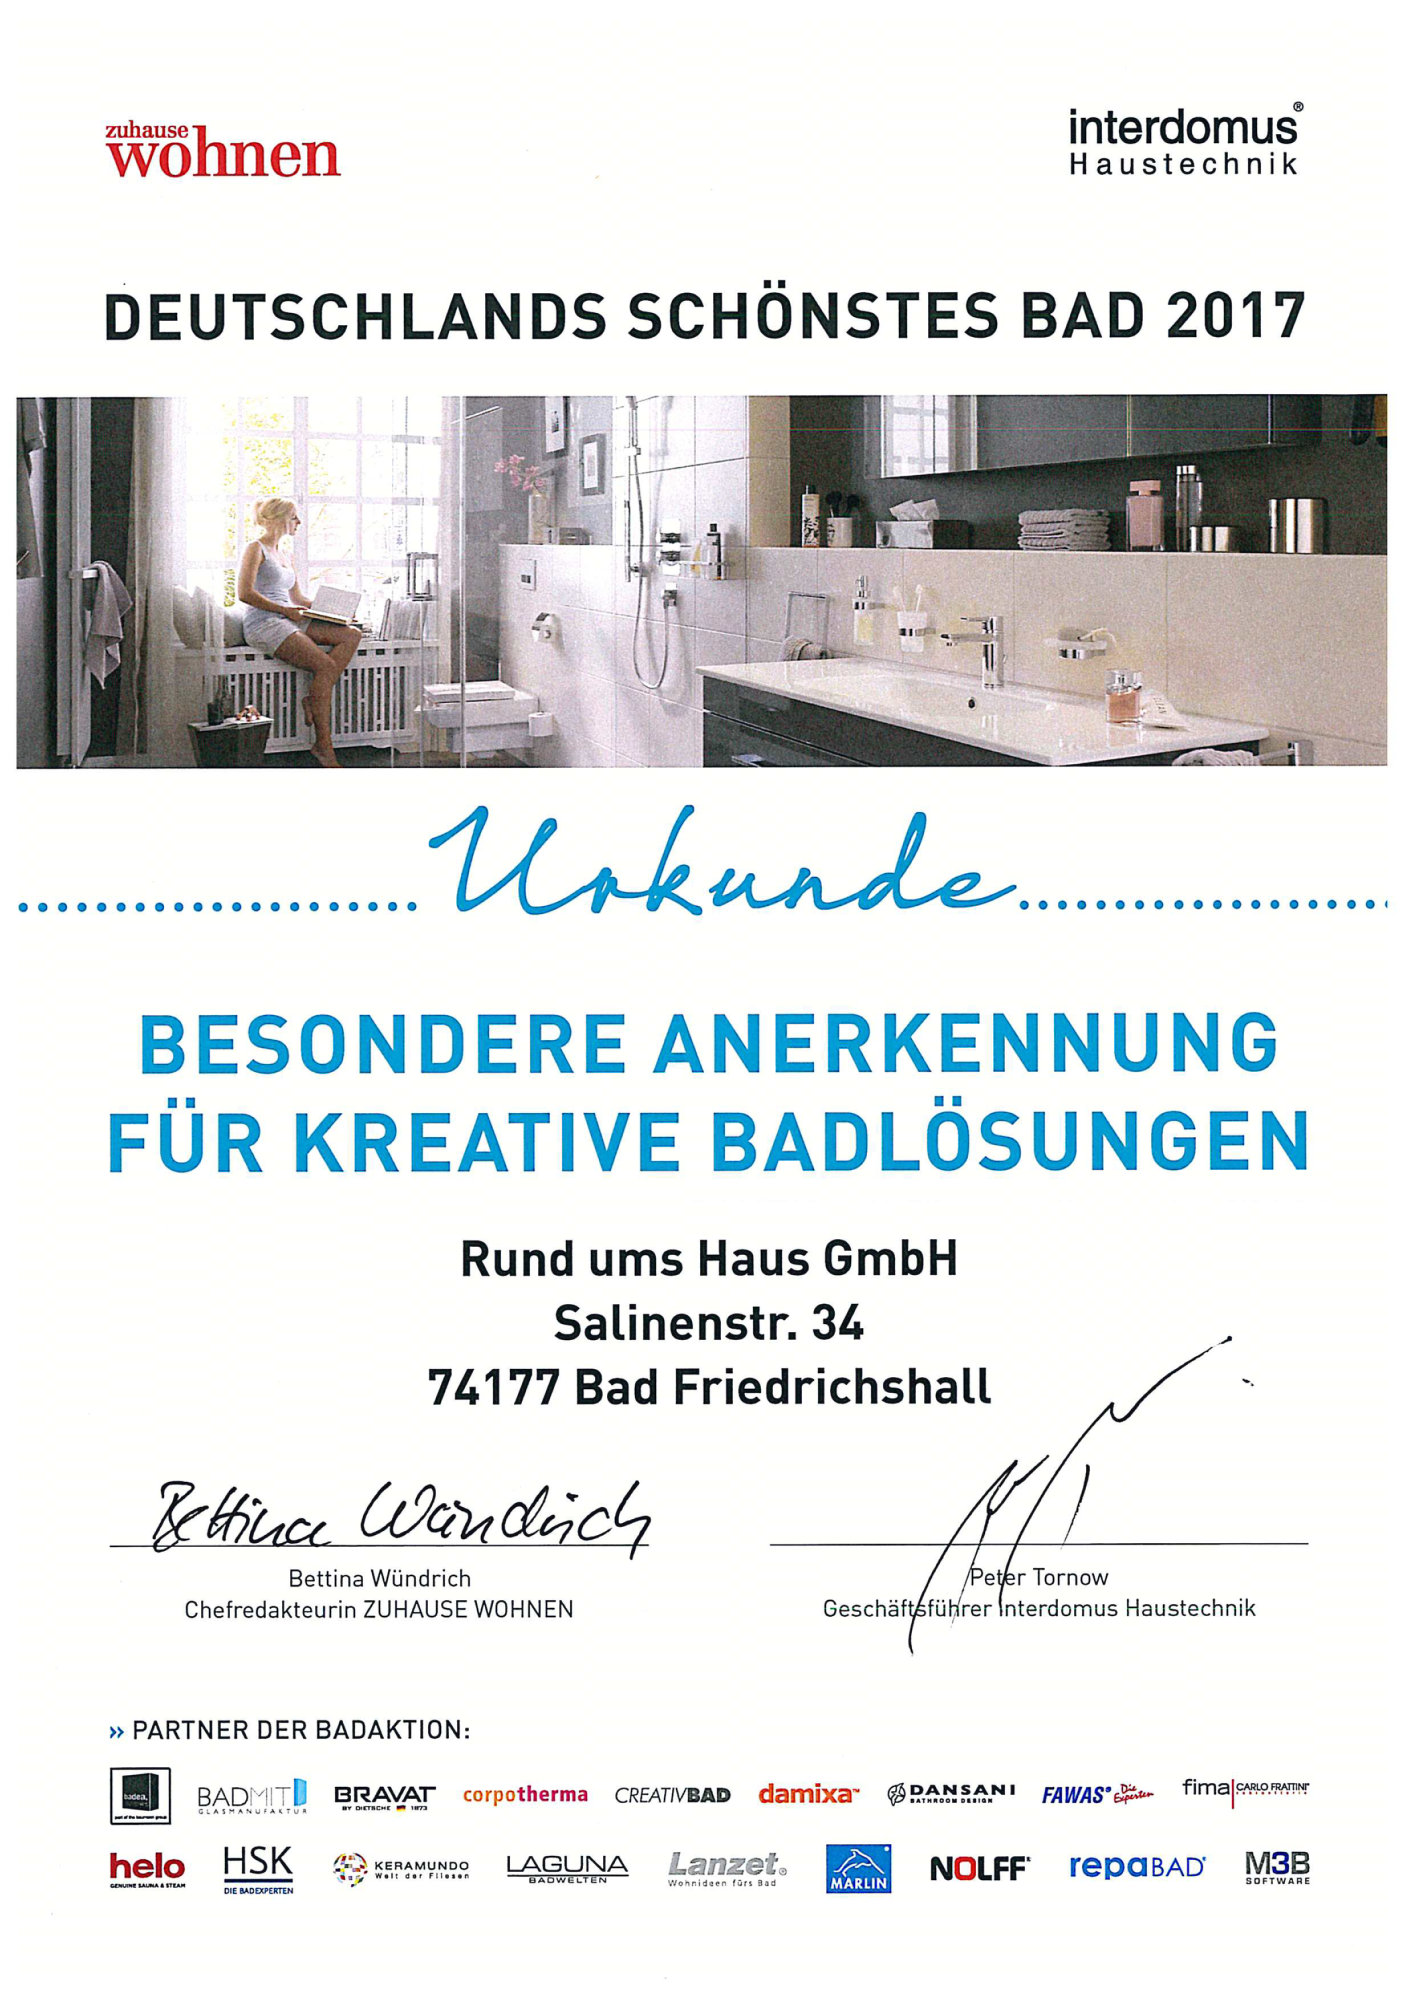 Deutschland-schoenstes-Bad-2017-Urkunde